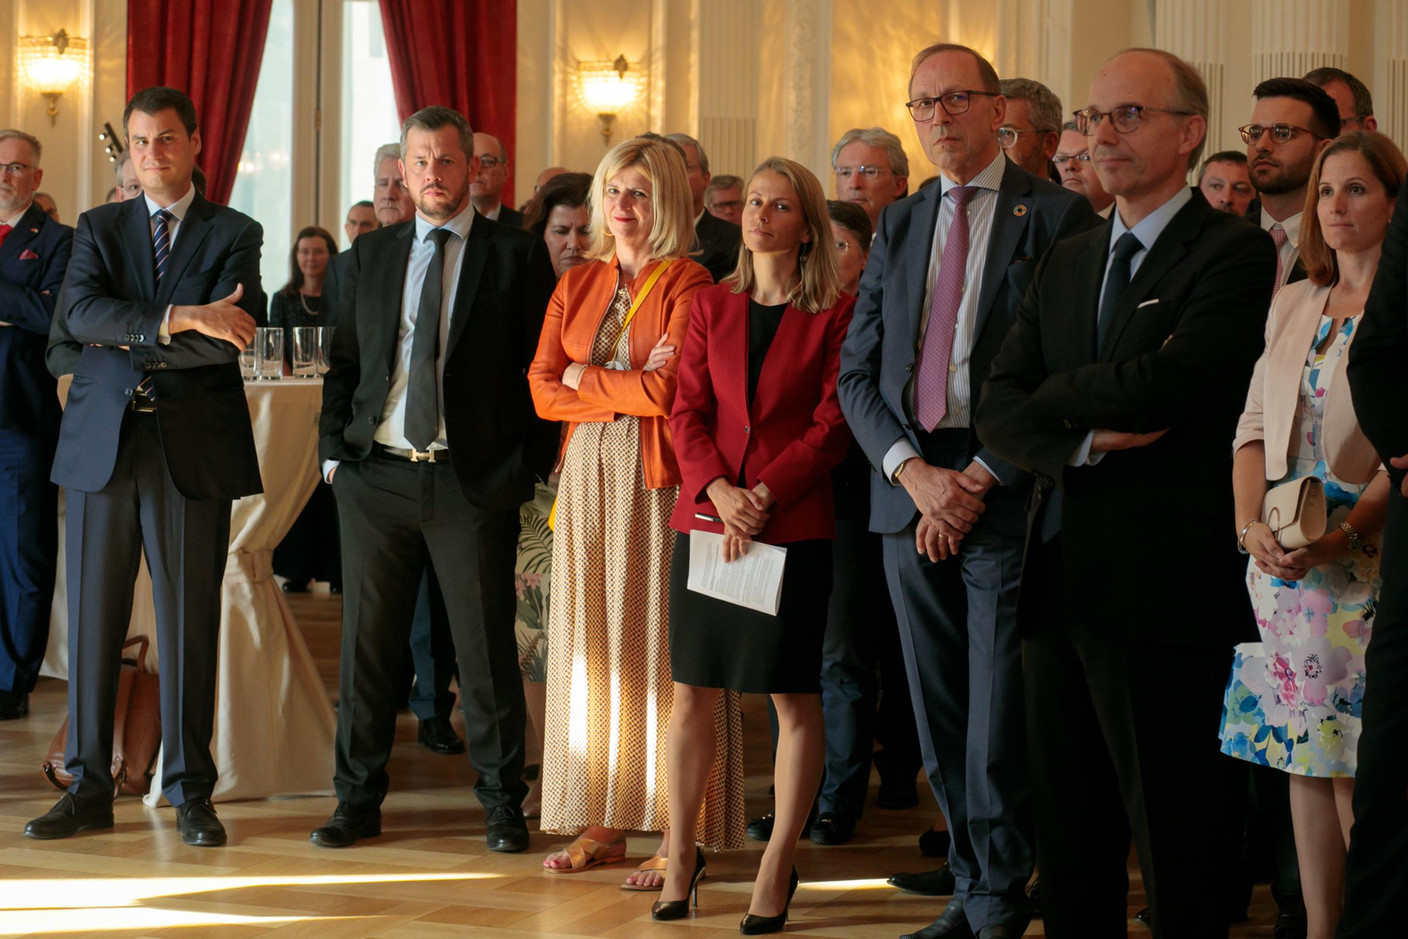 Camille Seillès (ABBL), Simone Dettling (UNEP FI), Robert Scharfe (Bourse de Luxembourg), Luc Frieden (Chambre de commerce) et Barbara Daroca (ING) (Photo: Matic Zorman)